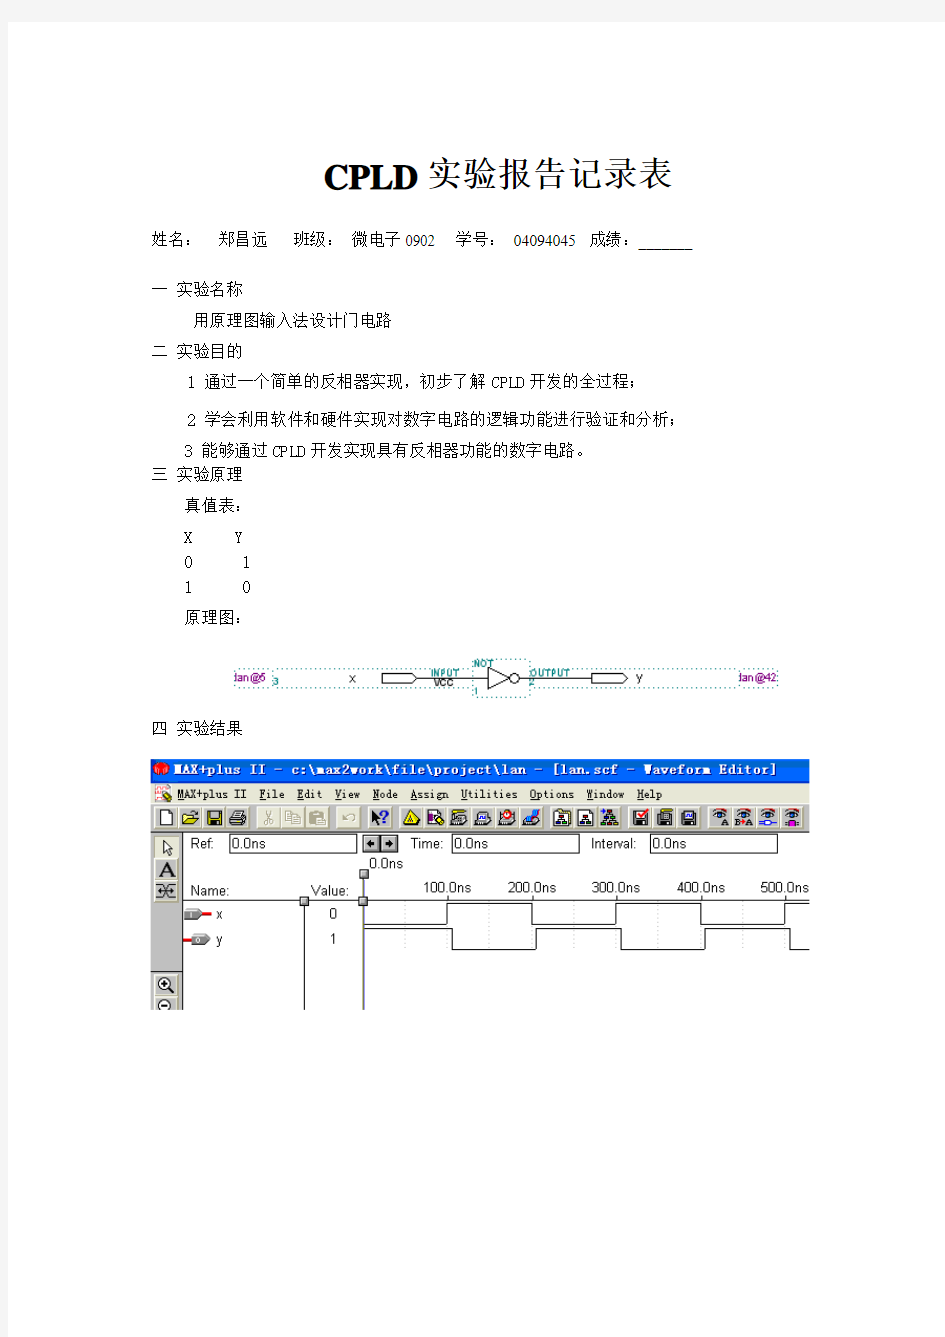 CPLD实验报告记录表—郑昌远—08